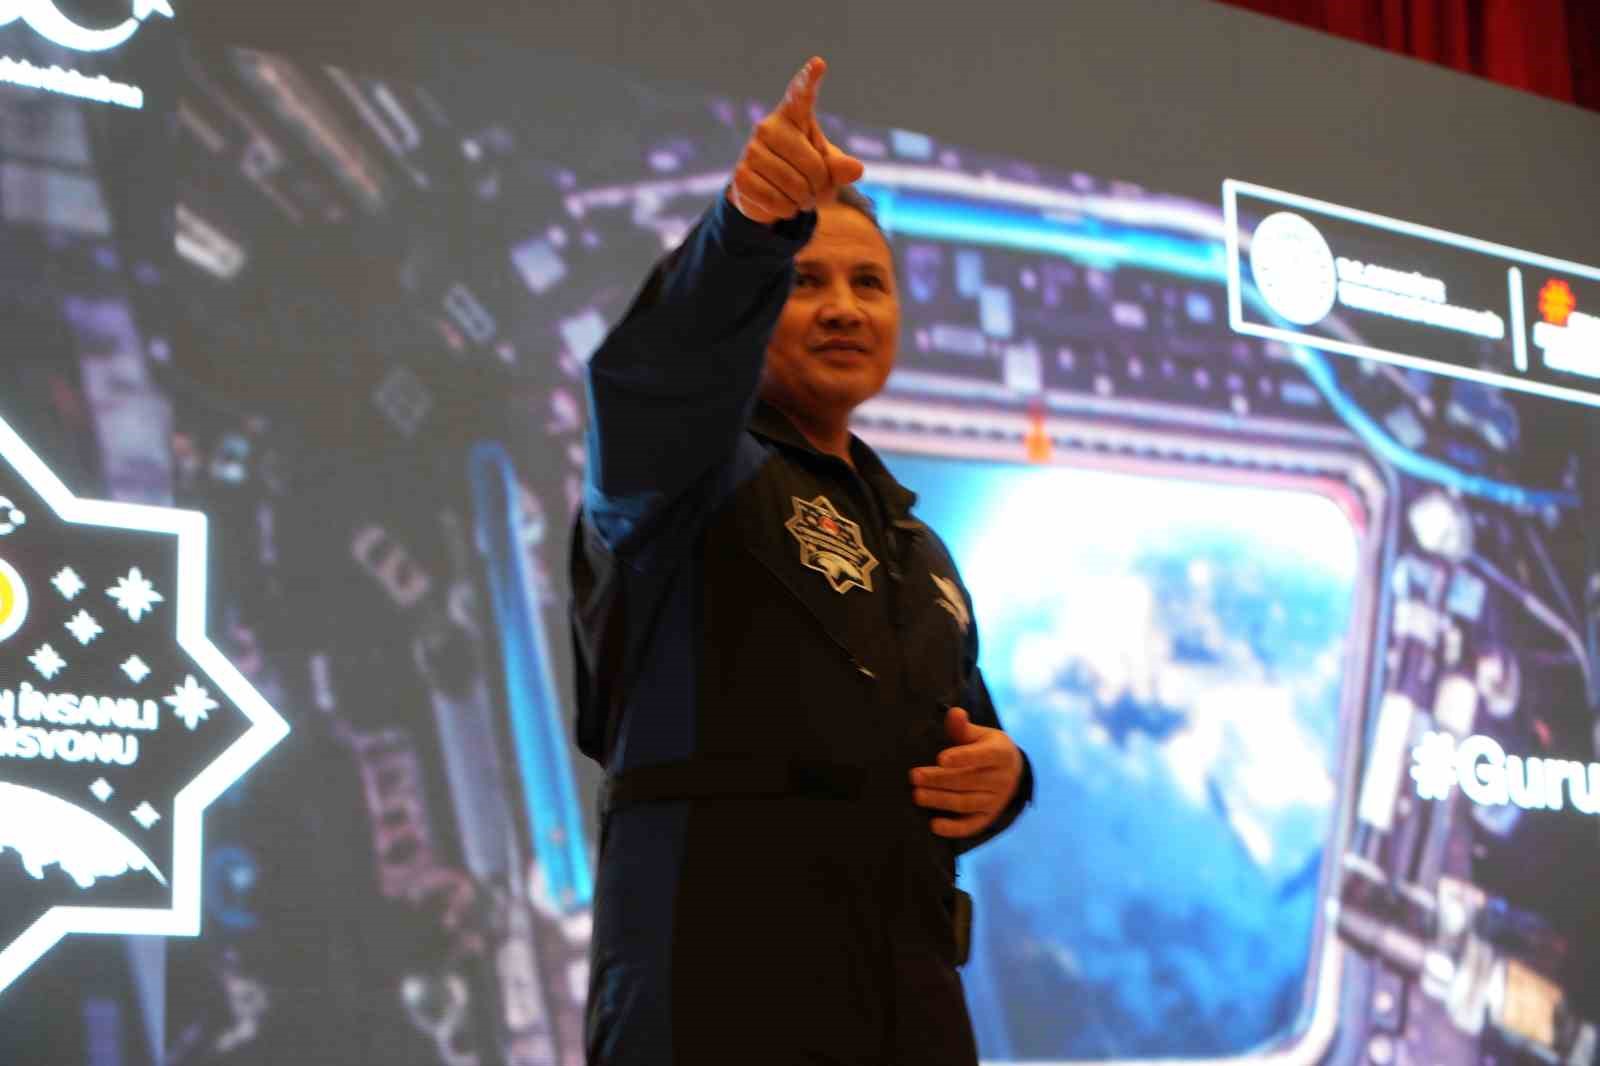 İlk Türk astronot Gezeravcı’dan çarpıcı uzay açıklaması: “Uzay çöplüğüne vesile olan pek çok uzay aracı var”
